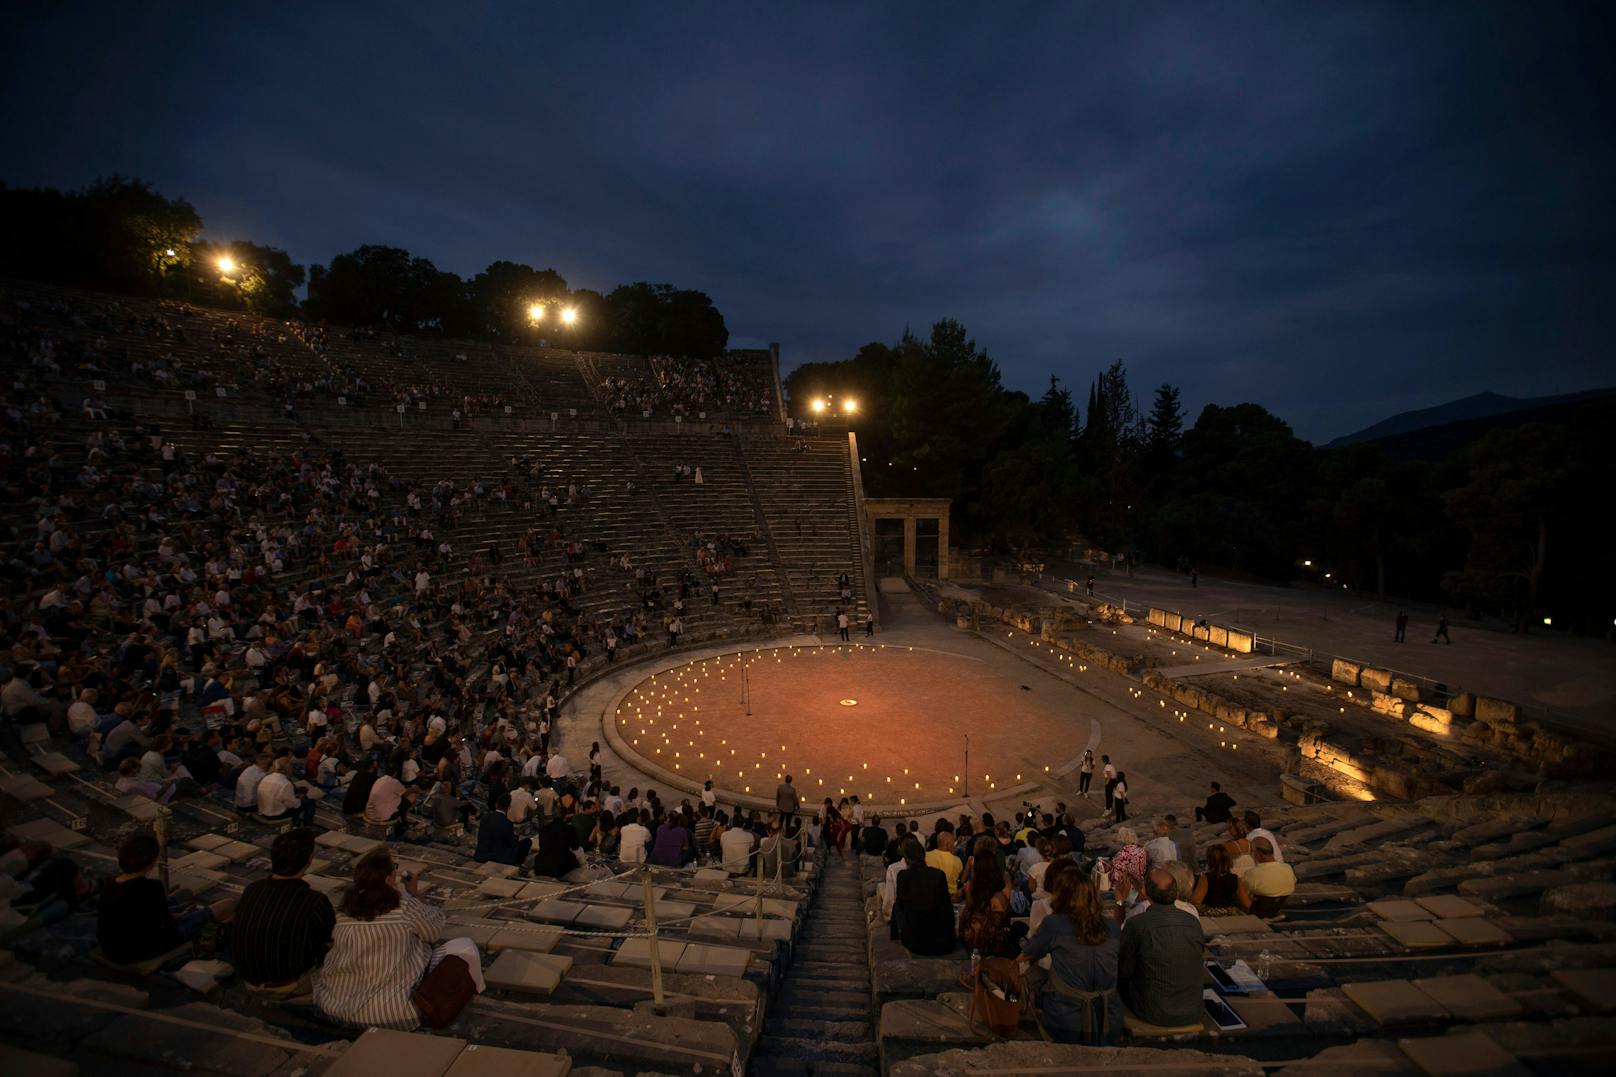 Ein griechischer Schauspieler lehnte ab, ausschließlich für geimpftes Publikum zu spielen. Die Aufführung musste abgesagt werden. (Symbolfoto)